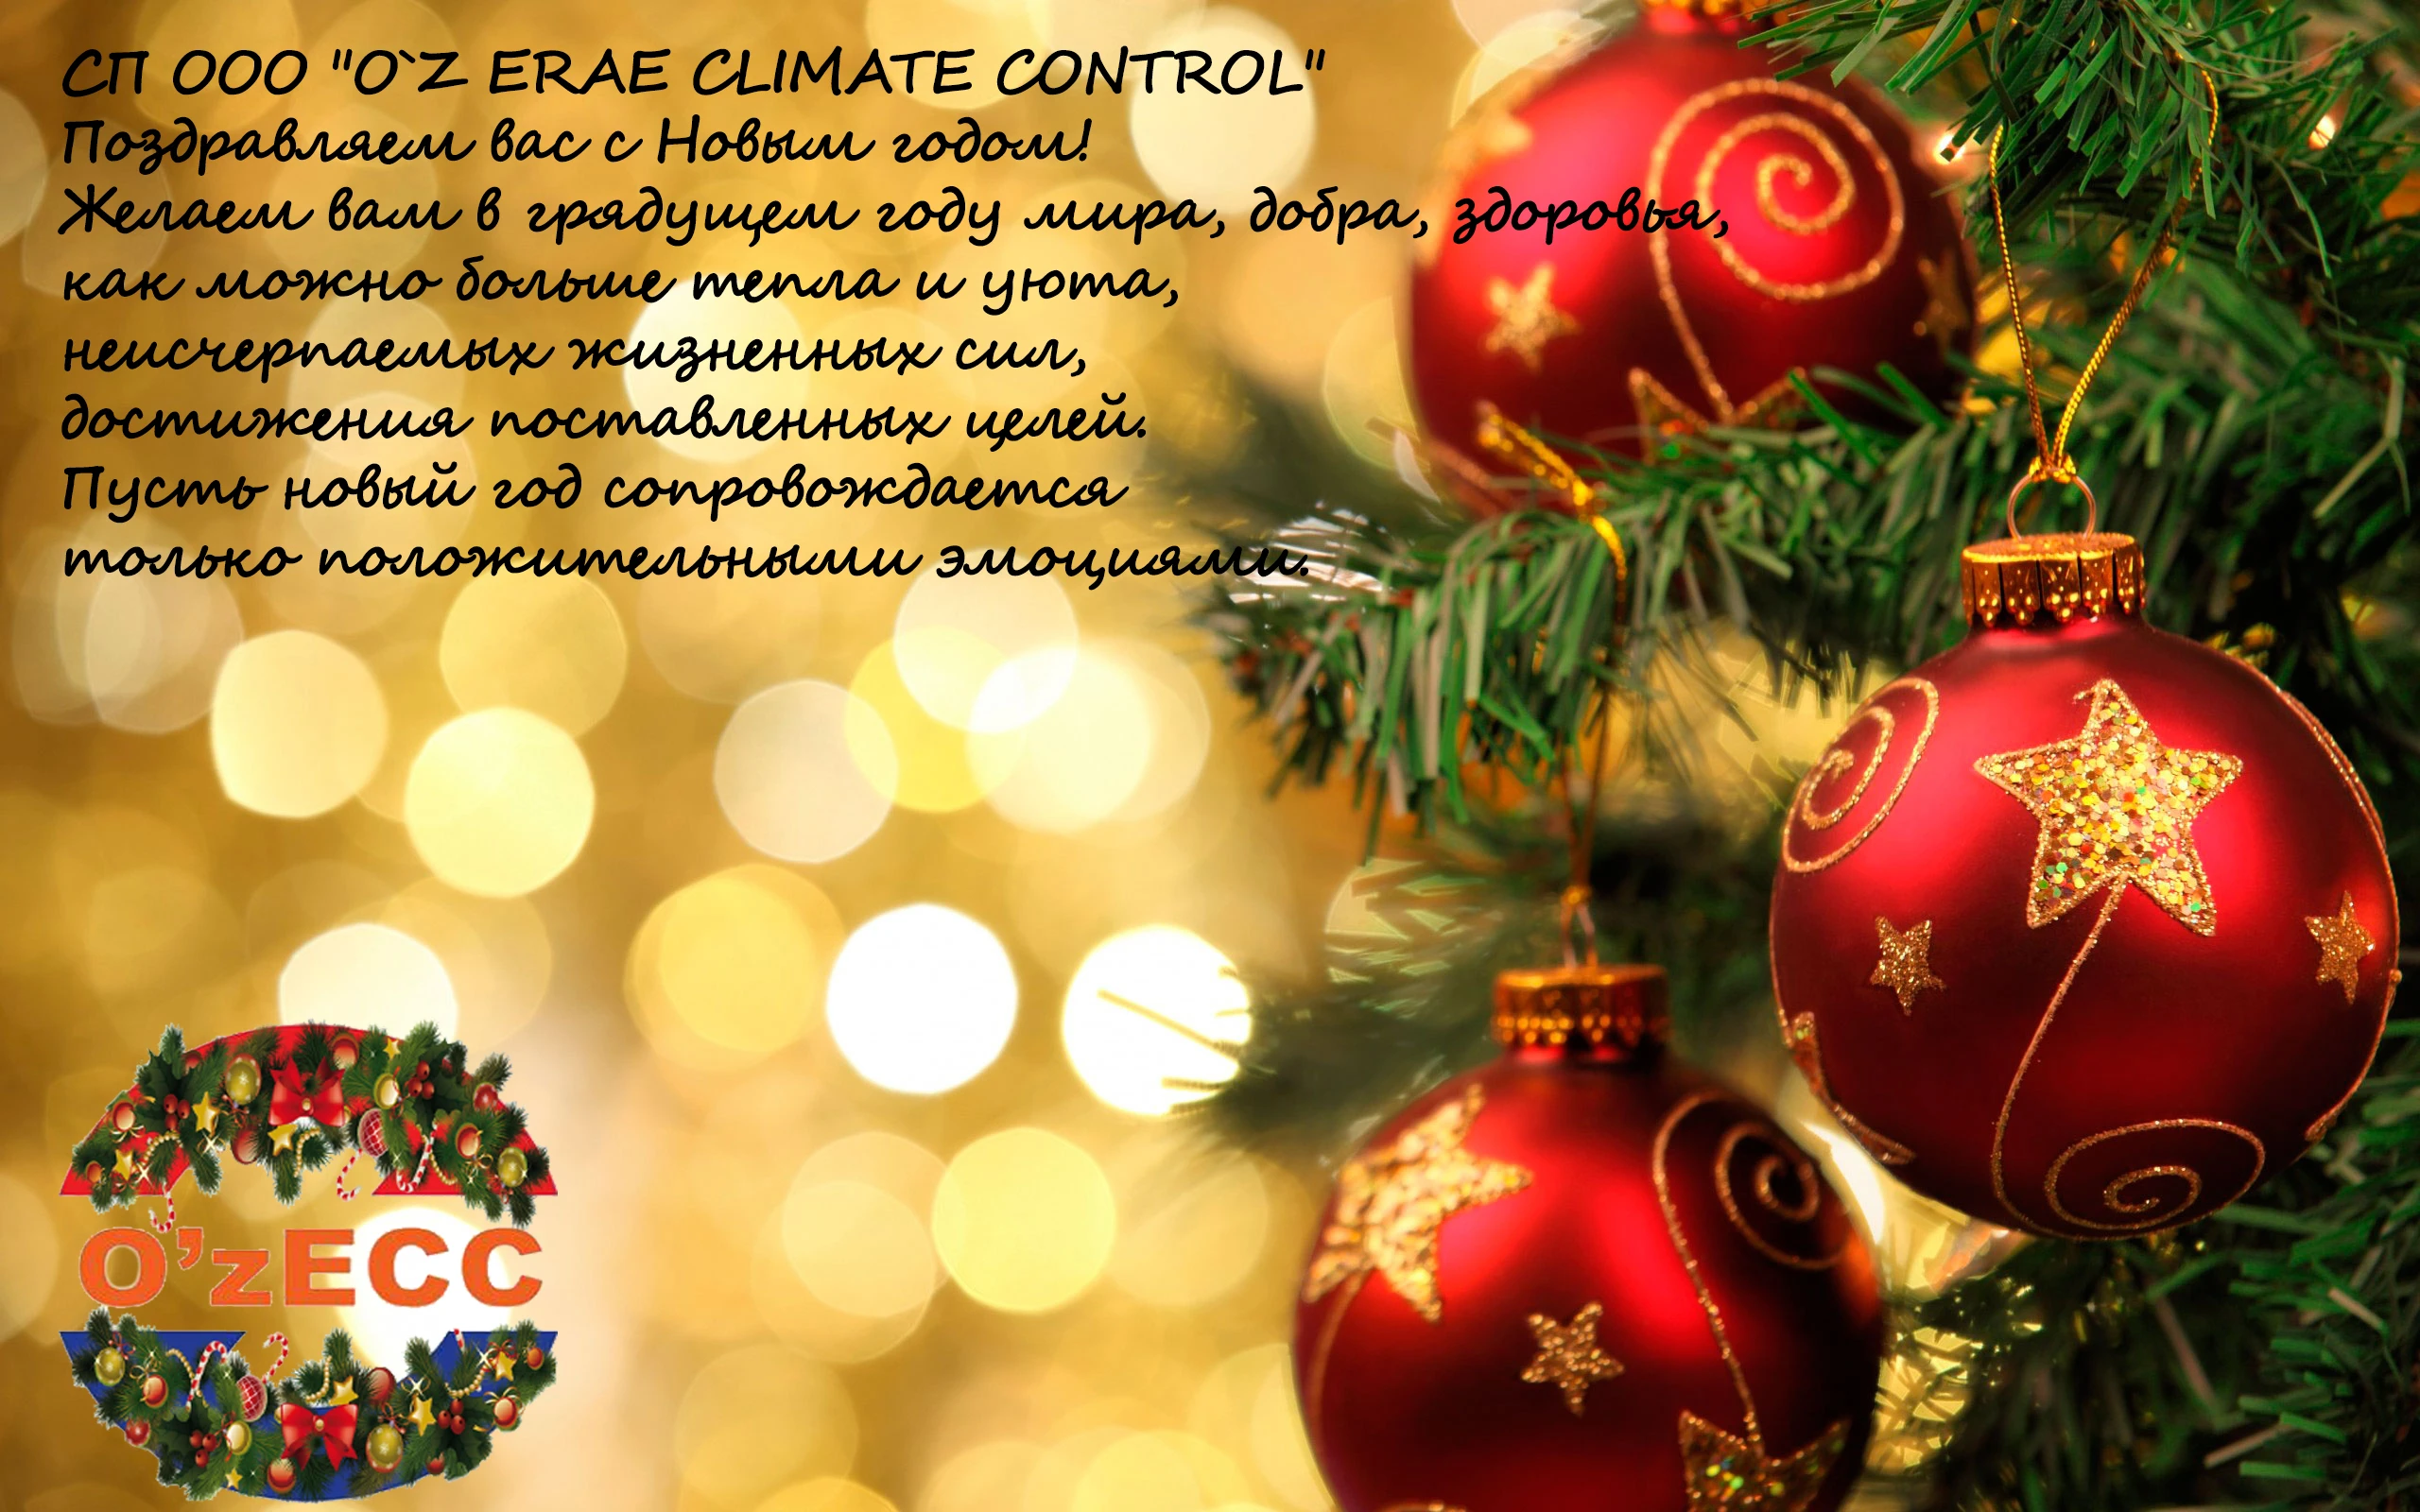 СП ООО "O`Z ERAE CLIMATE CONTROL" ПОЗДРАВЛЯЕТ ВАС С НОВЫМ ГОДОМ!